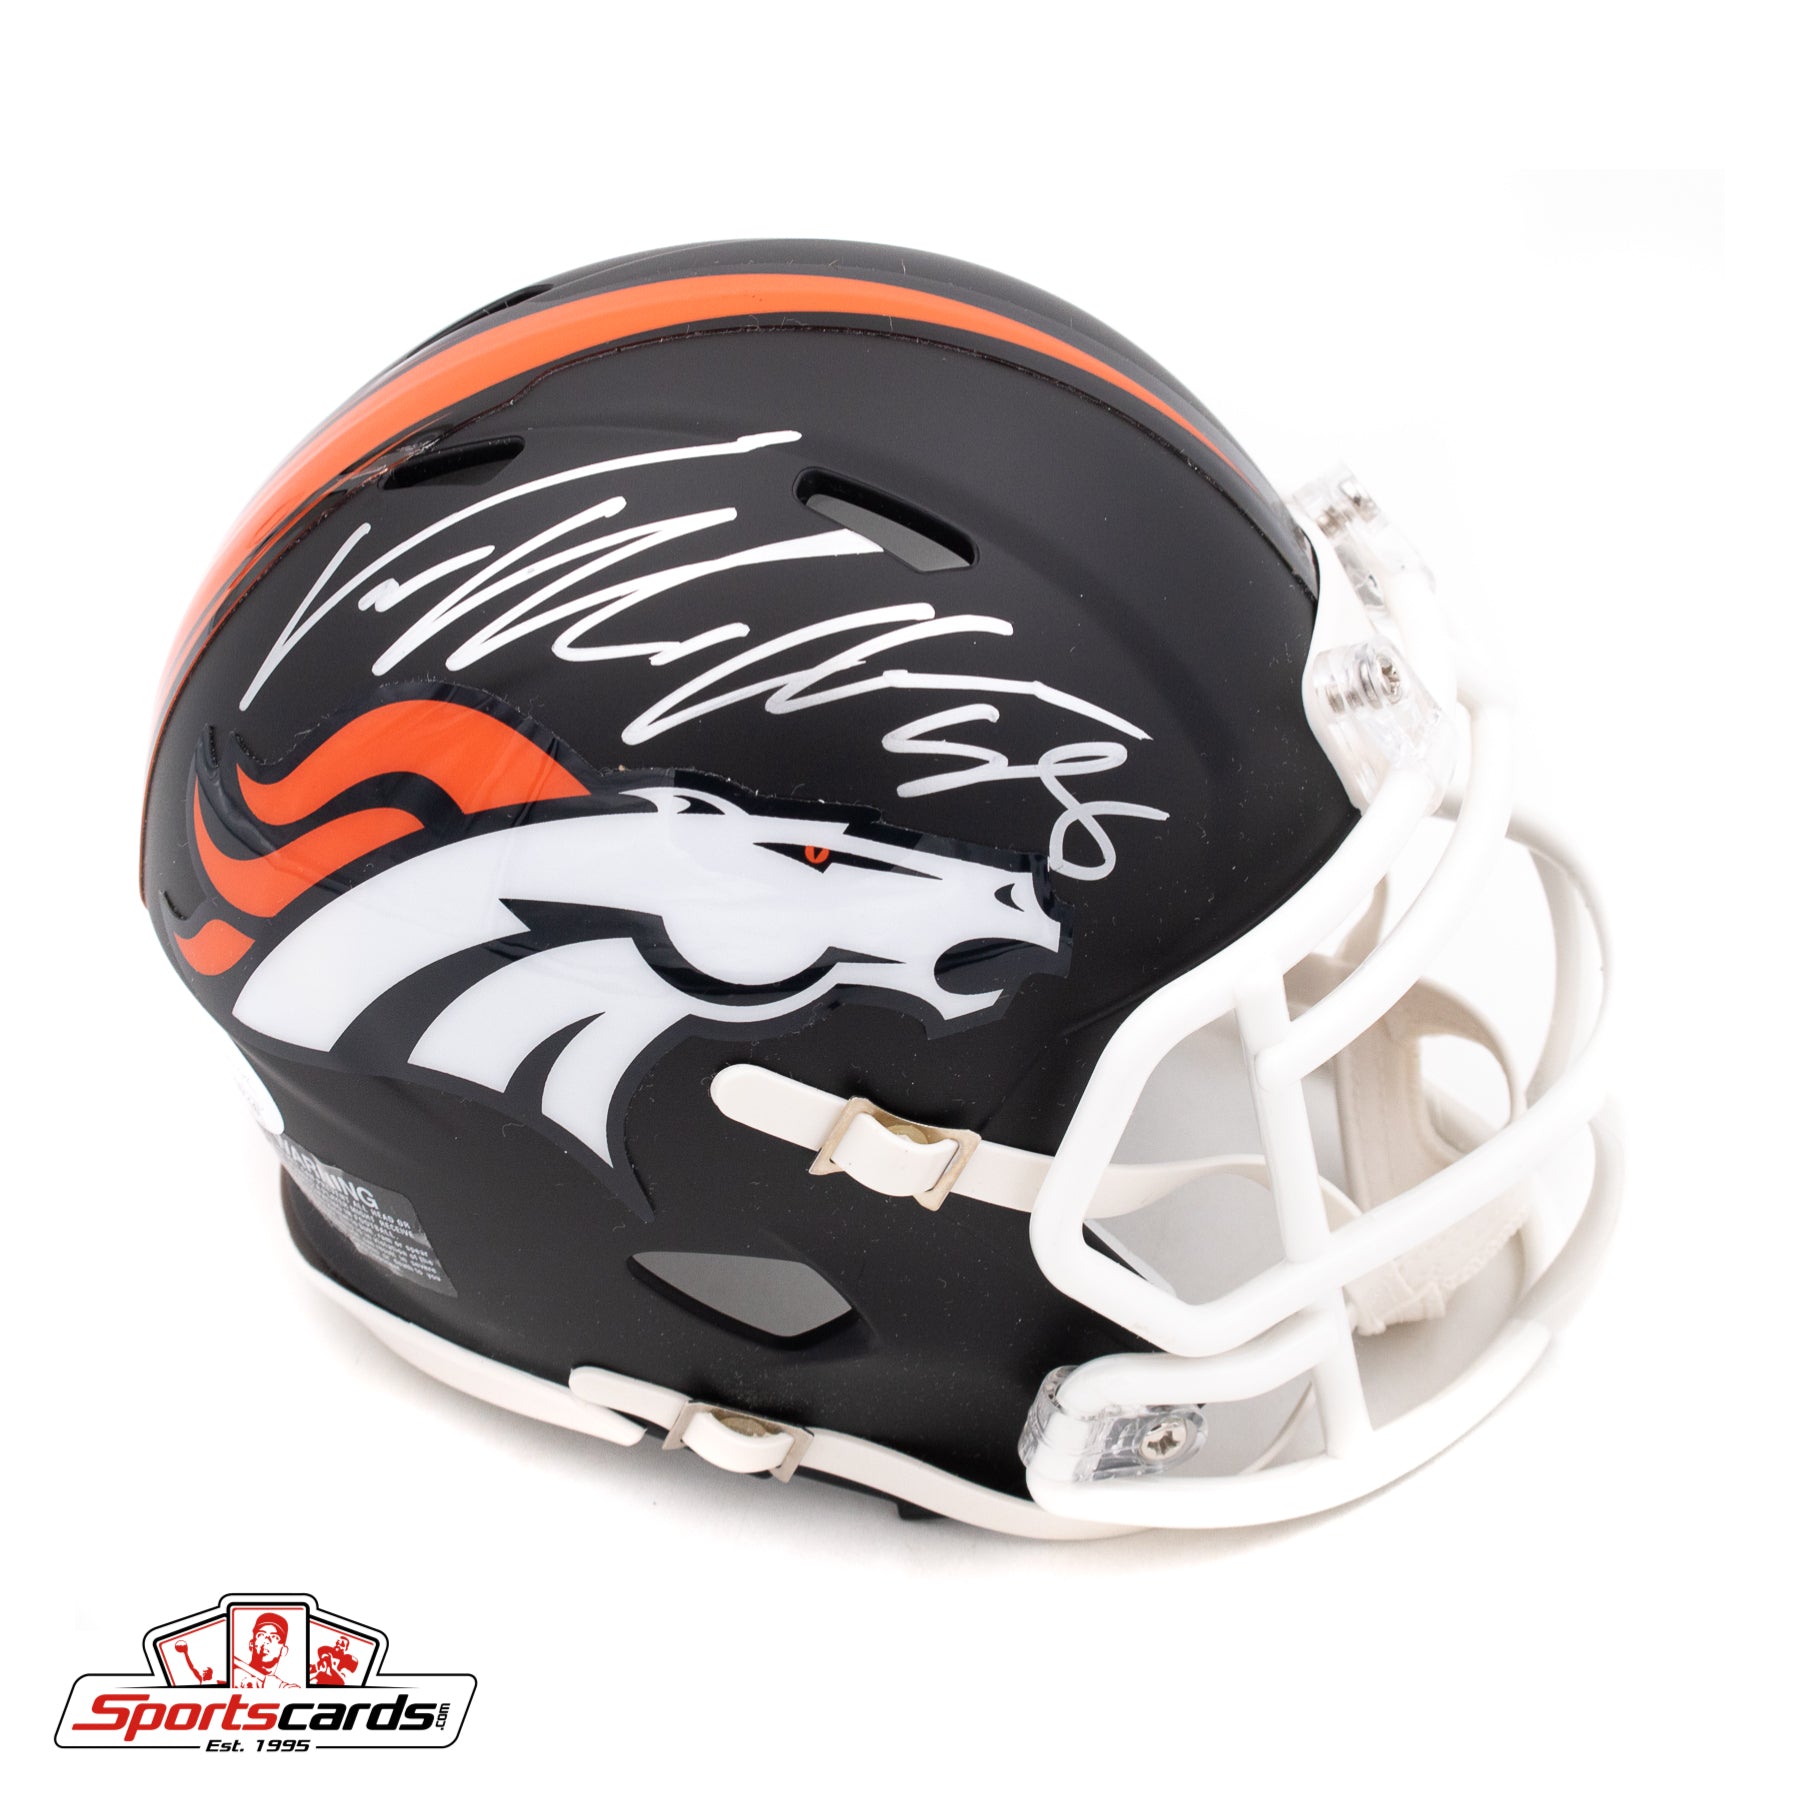 Von Miller Signed Autographed Denver Broncos Flat Black Mini Helmet JSA Witnessed COA